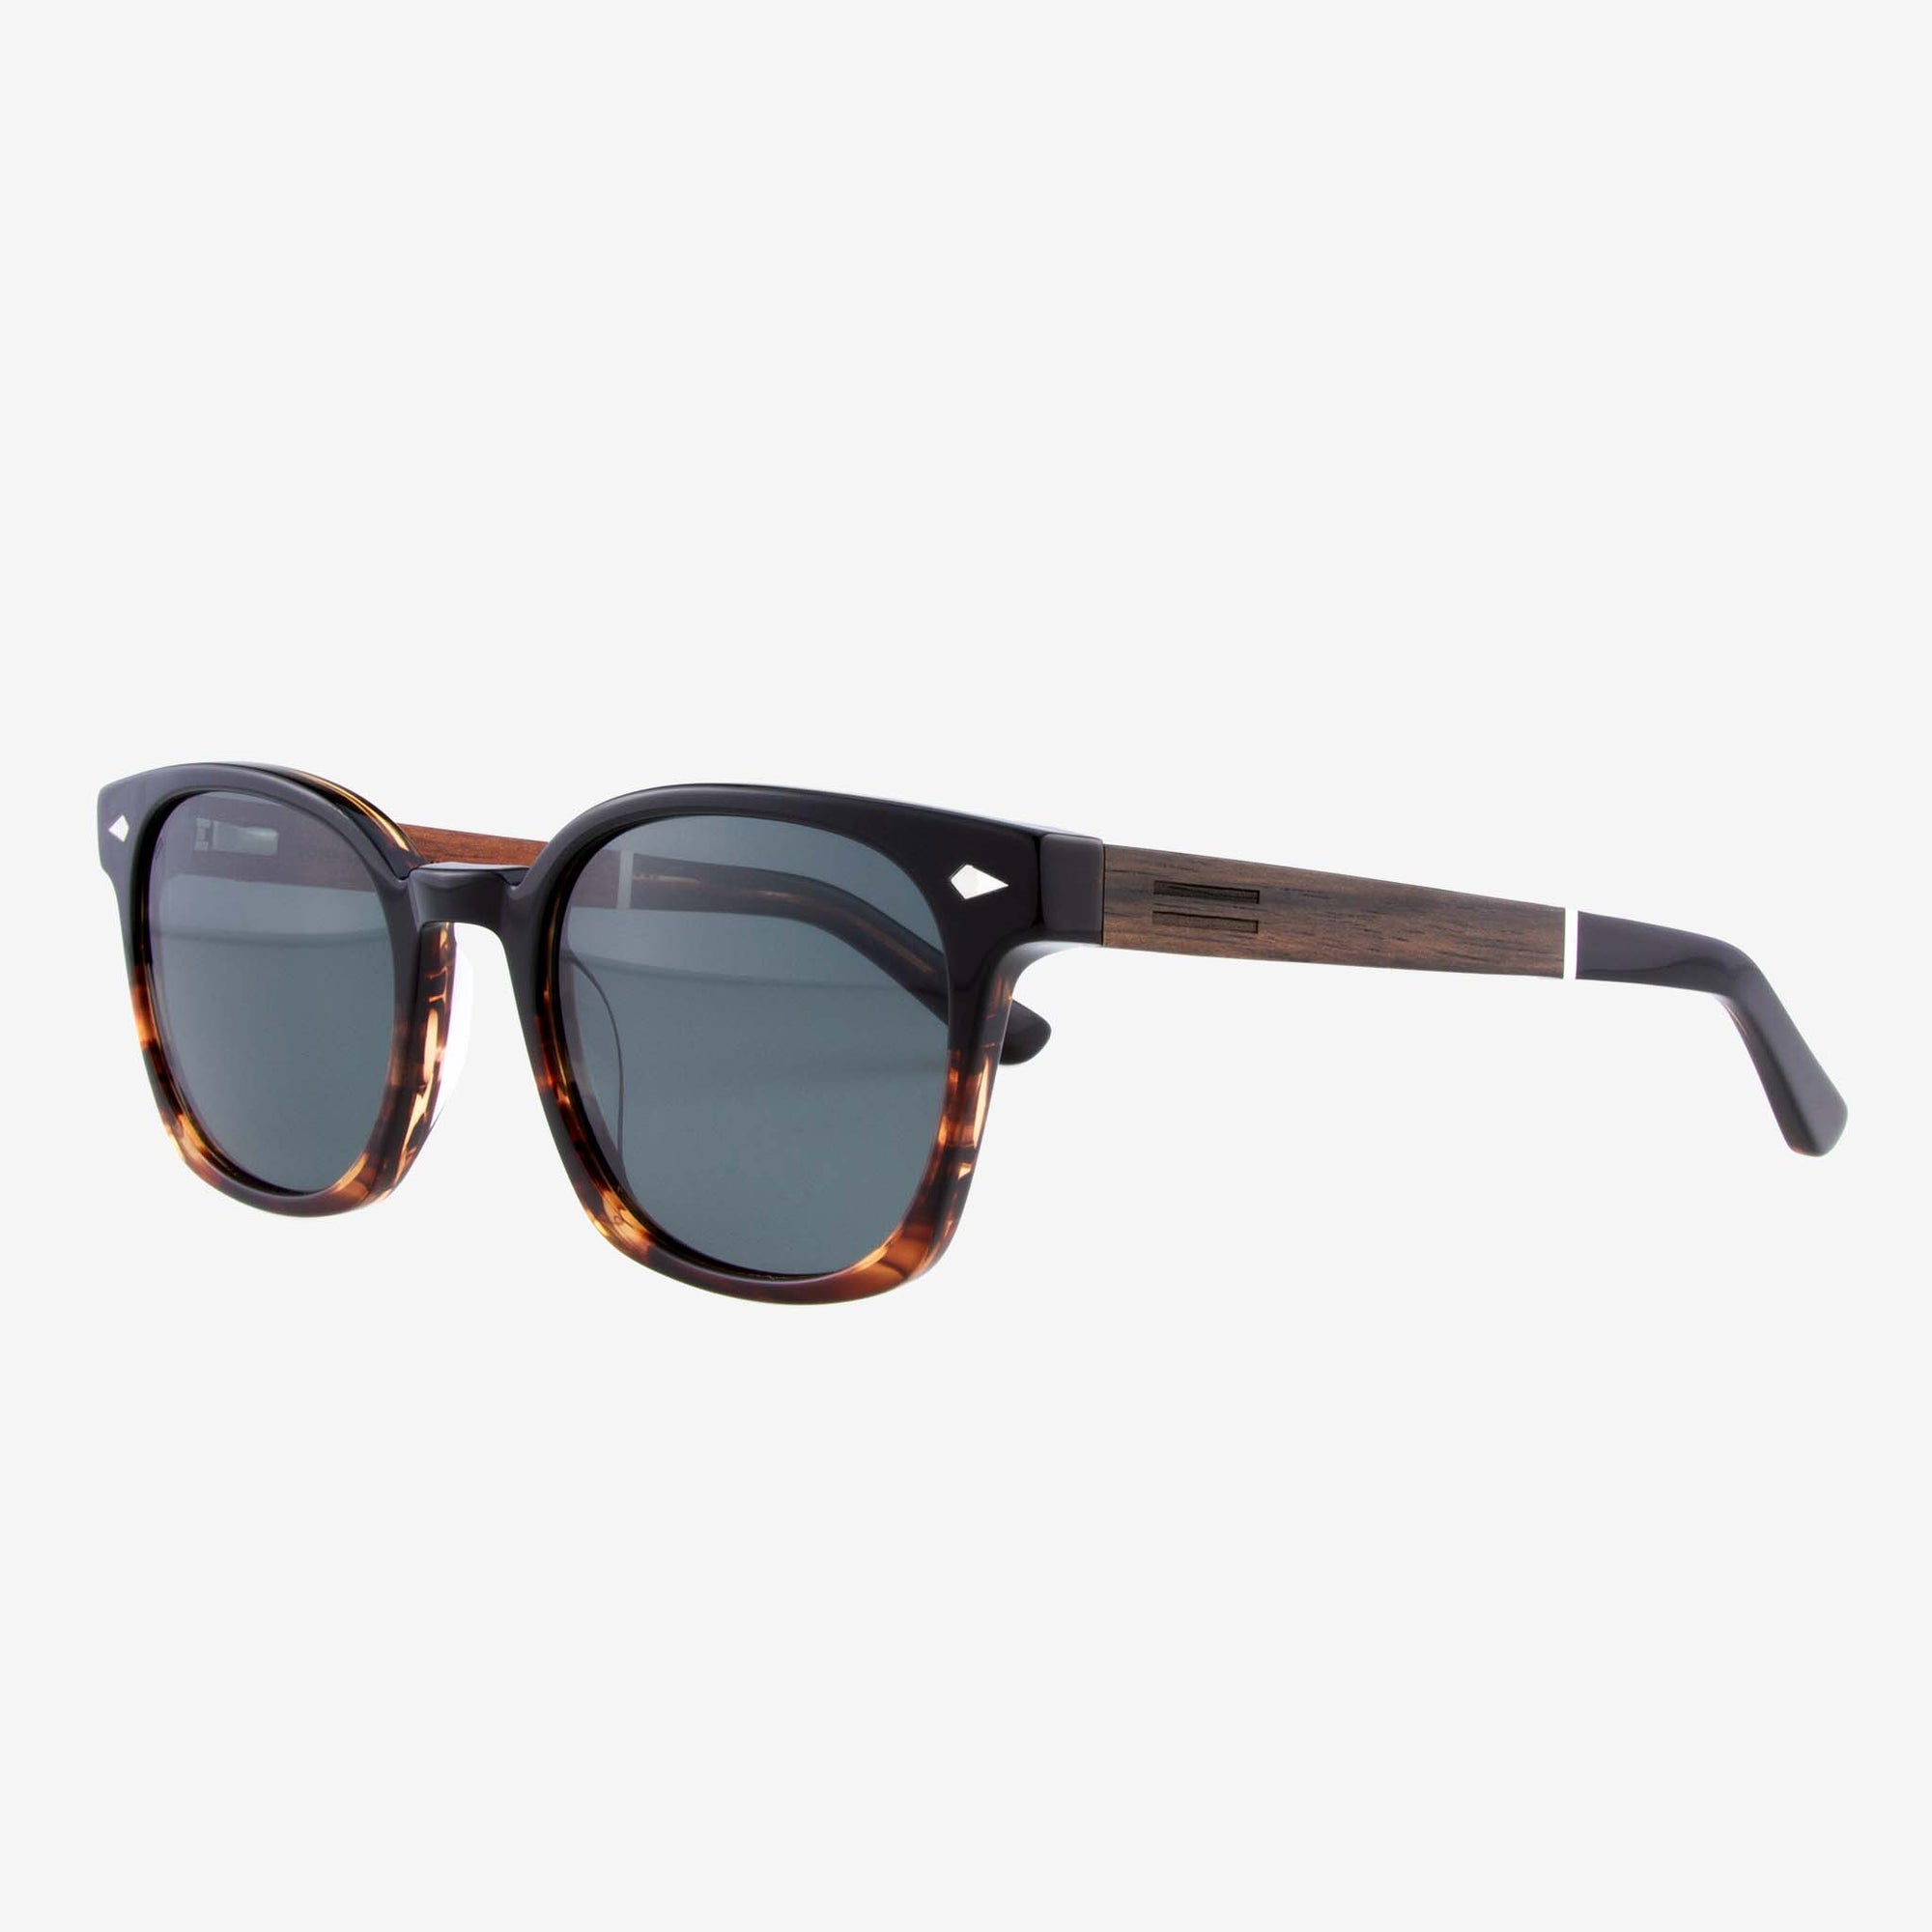 Williston - Acetate & Wood Sunglasses